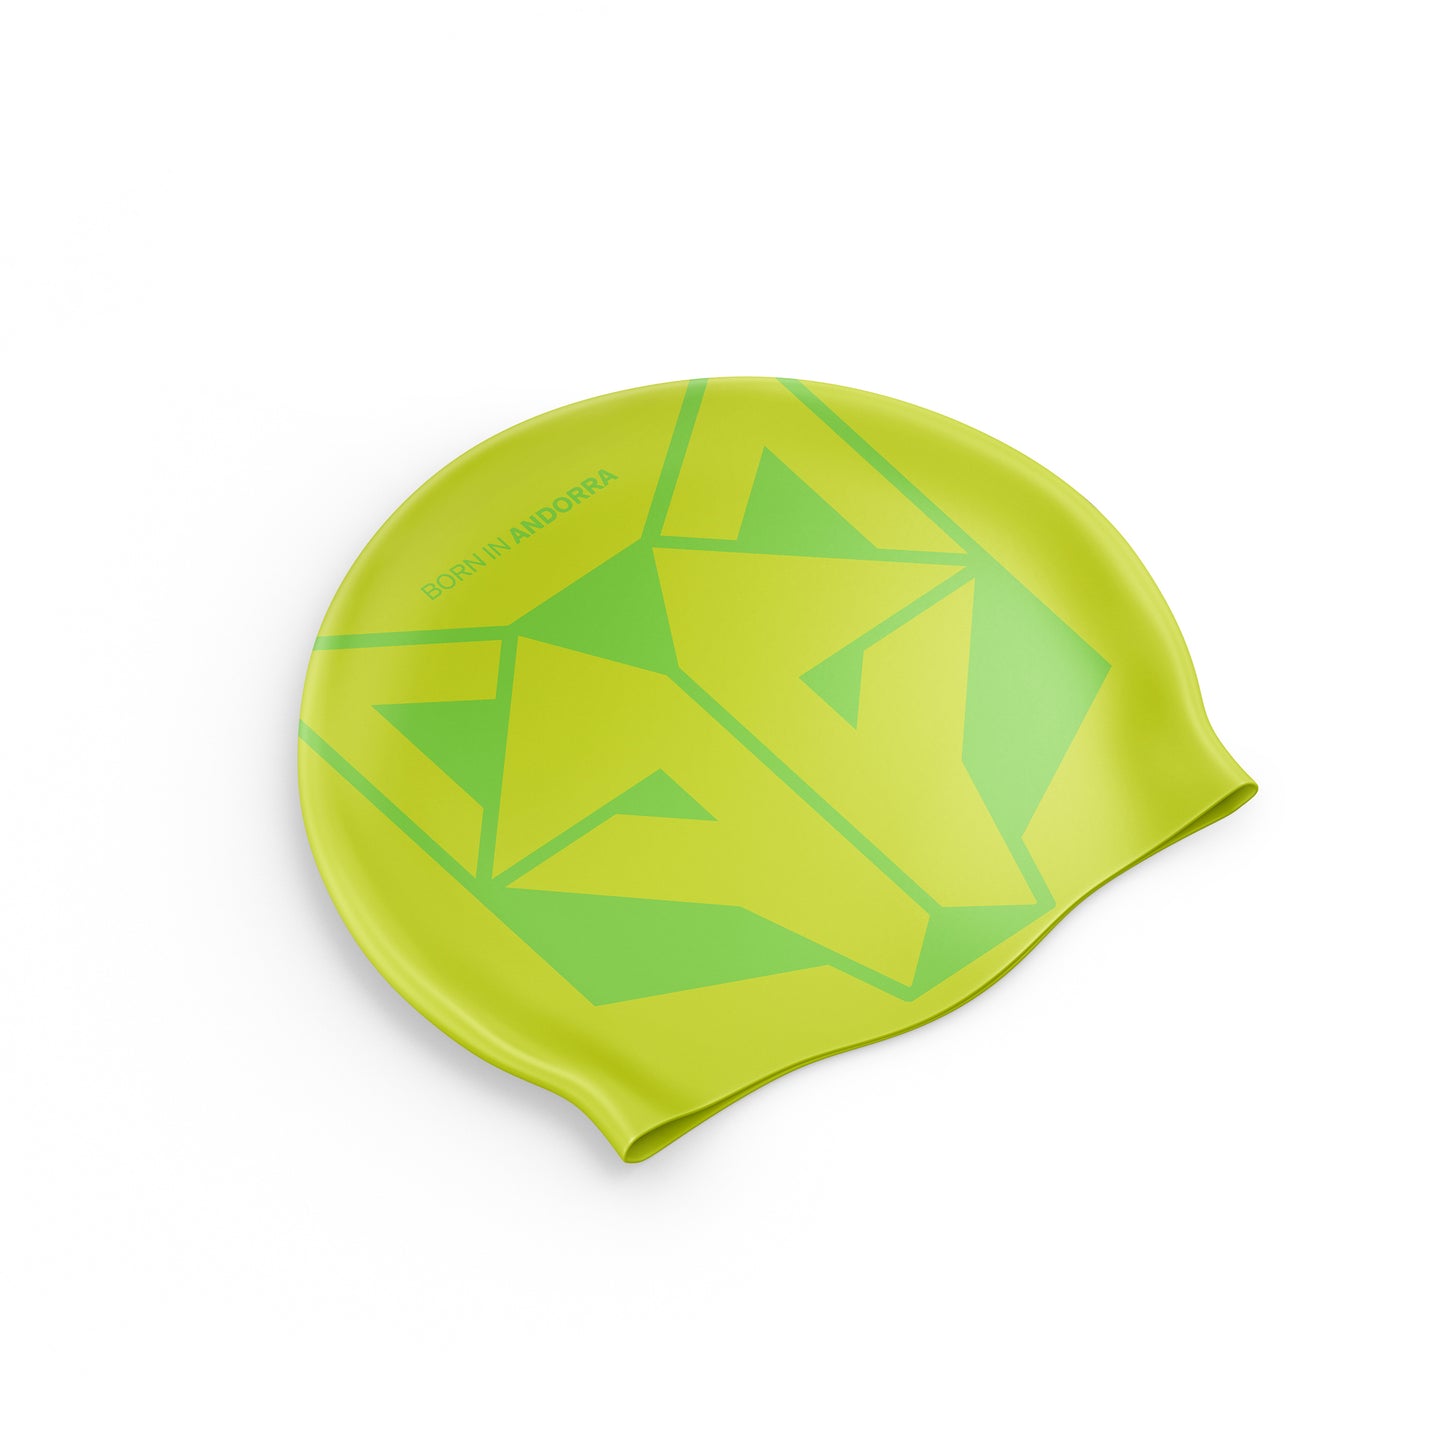 Gorro de natación - Fluo Yellow & Fluo Green